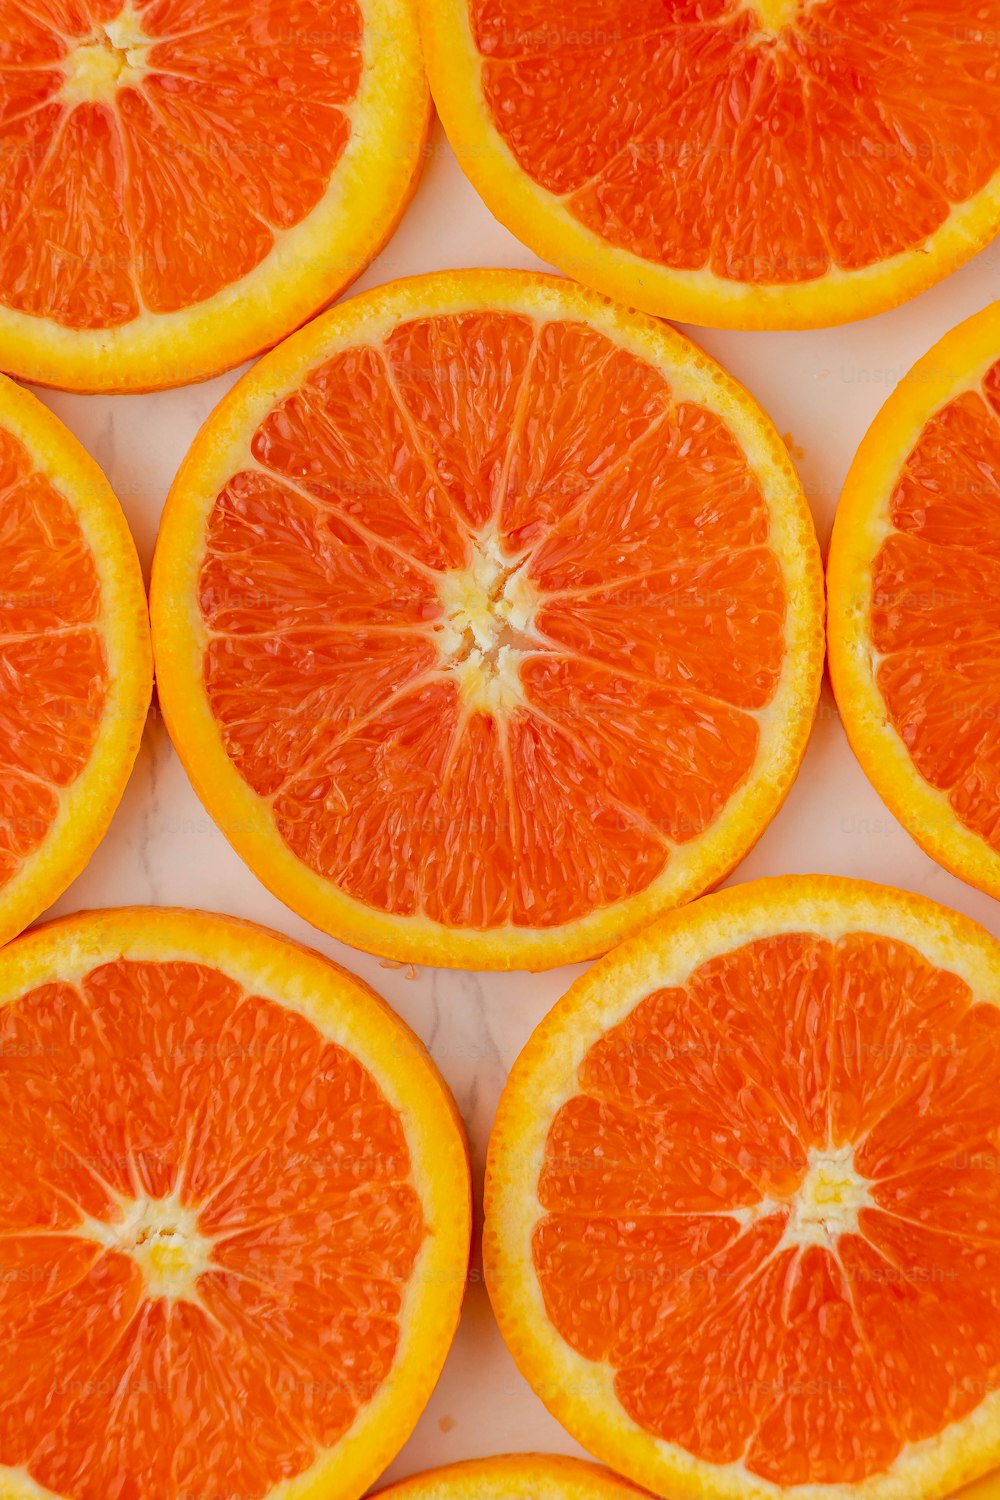 테이블에 반으로 자른 오렌지 한 무리